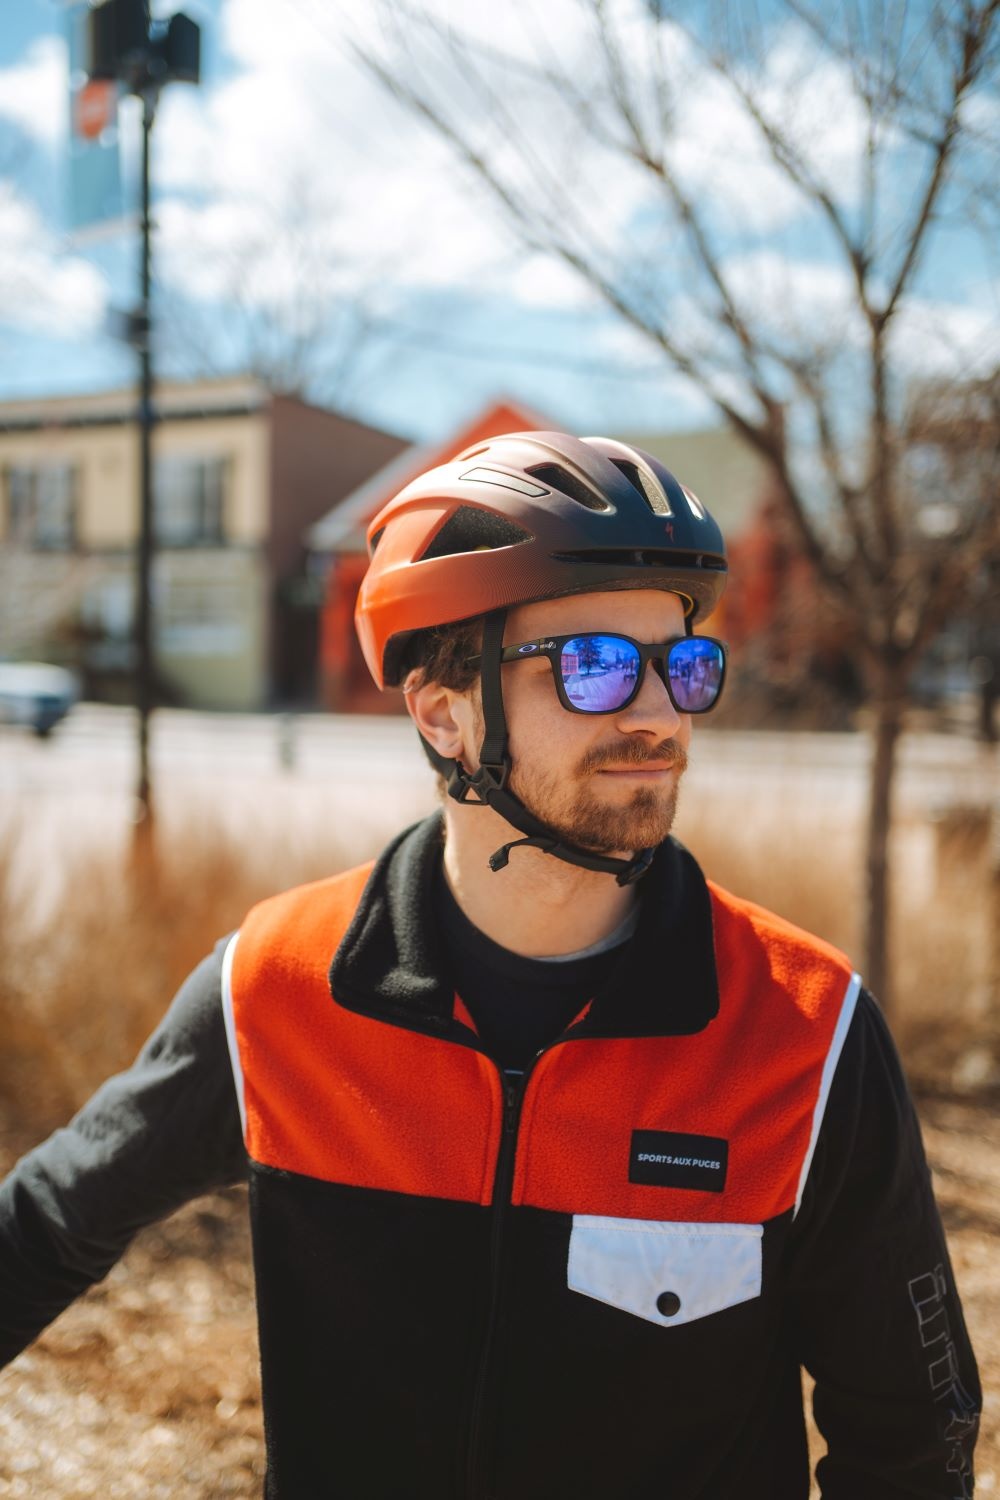 Is wearing a bicycle helmet mandatory in Quebec?